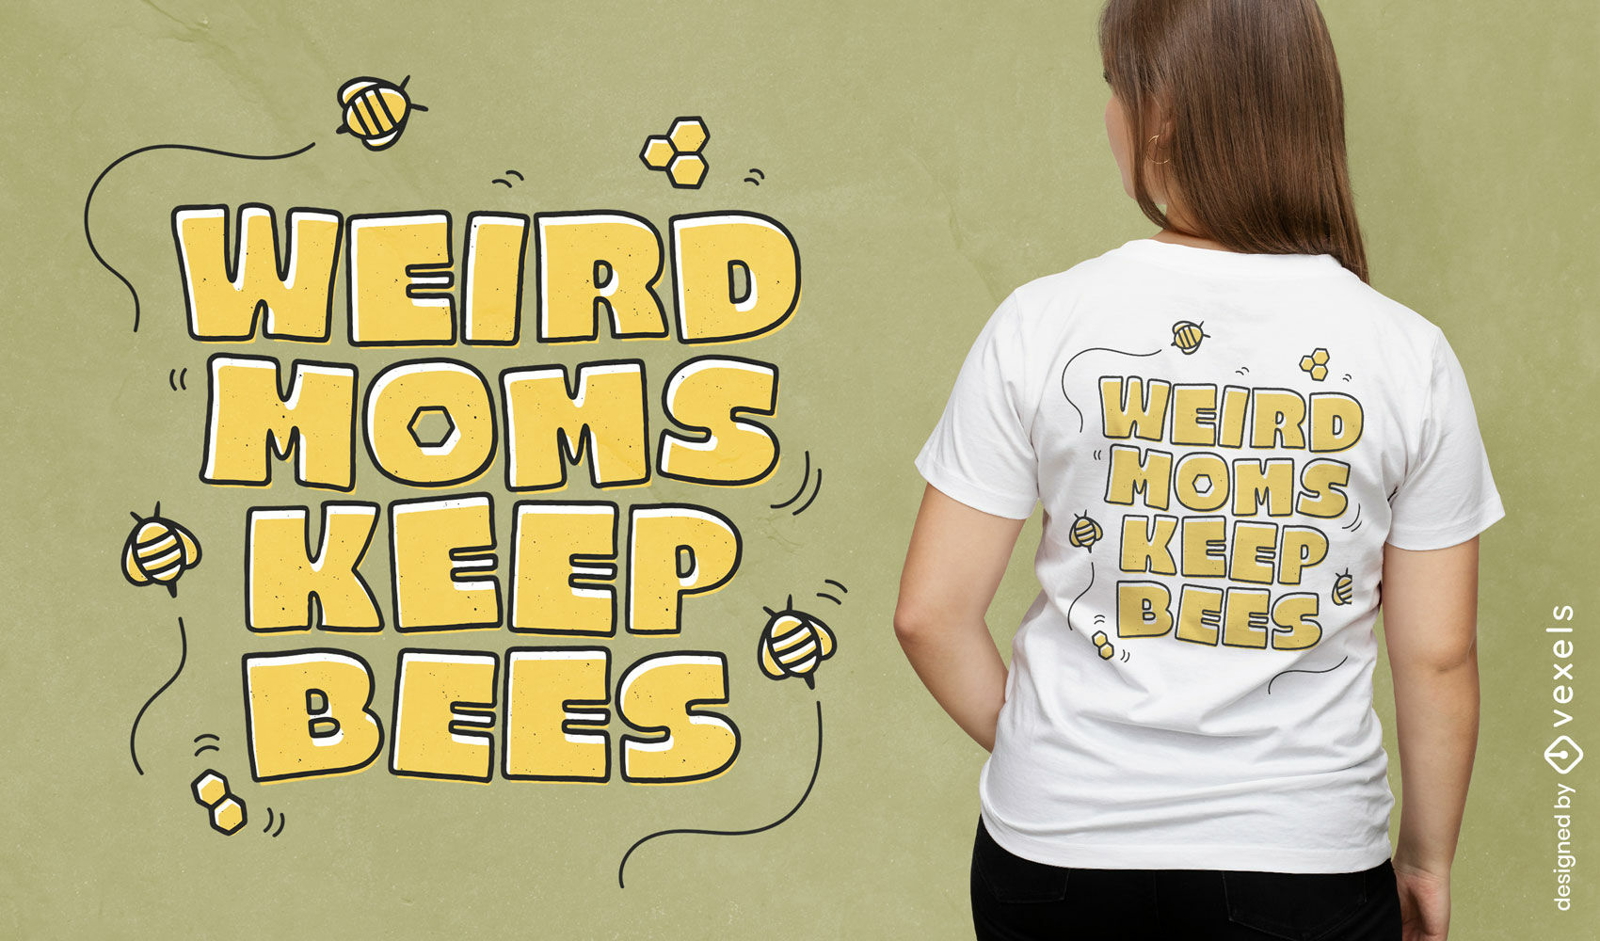 Las mam?s raras mantienen el dise?o de la camiseta de la cita de las abejas